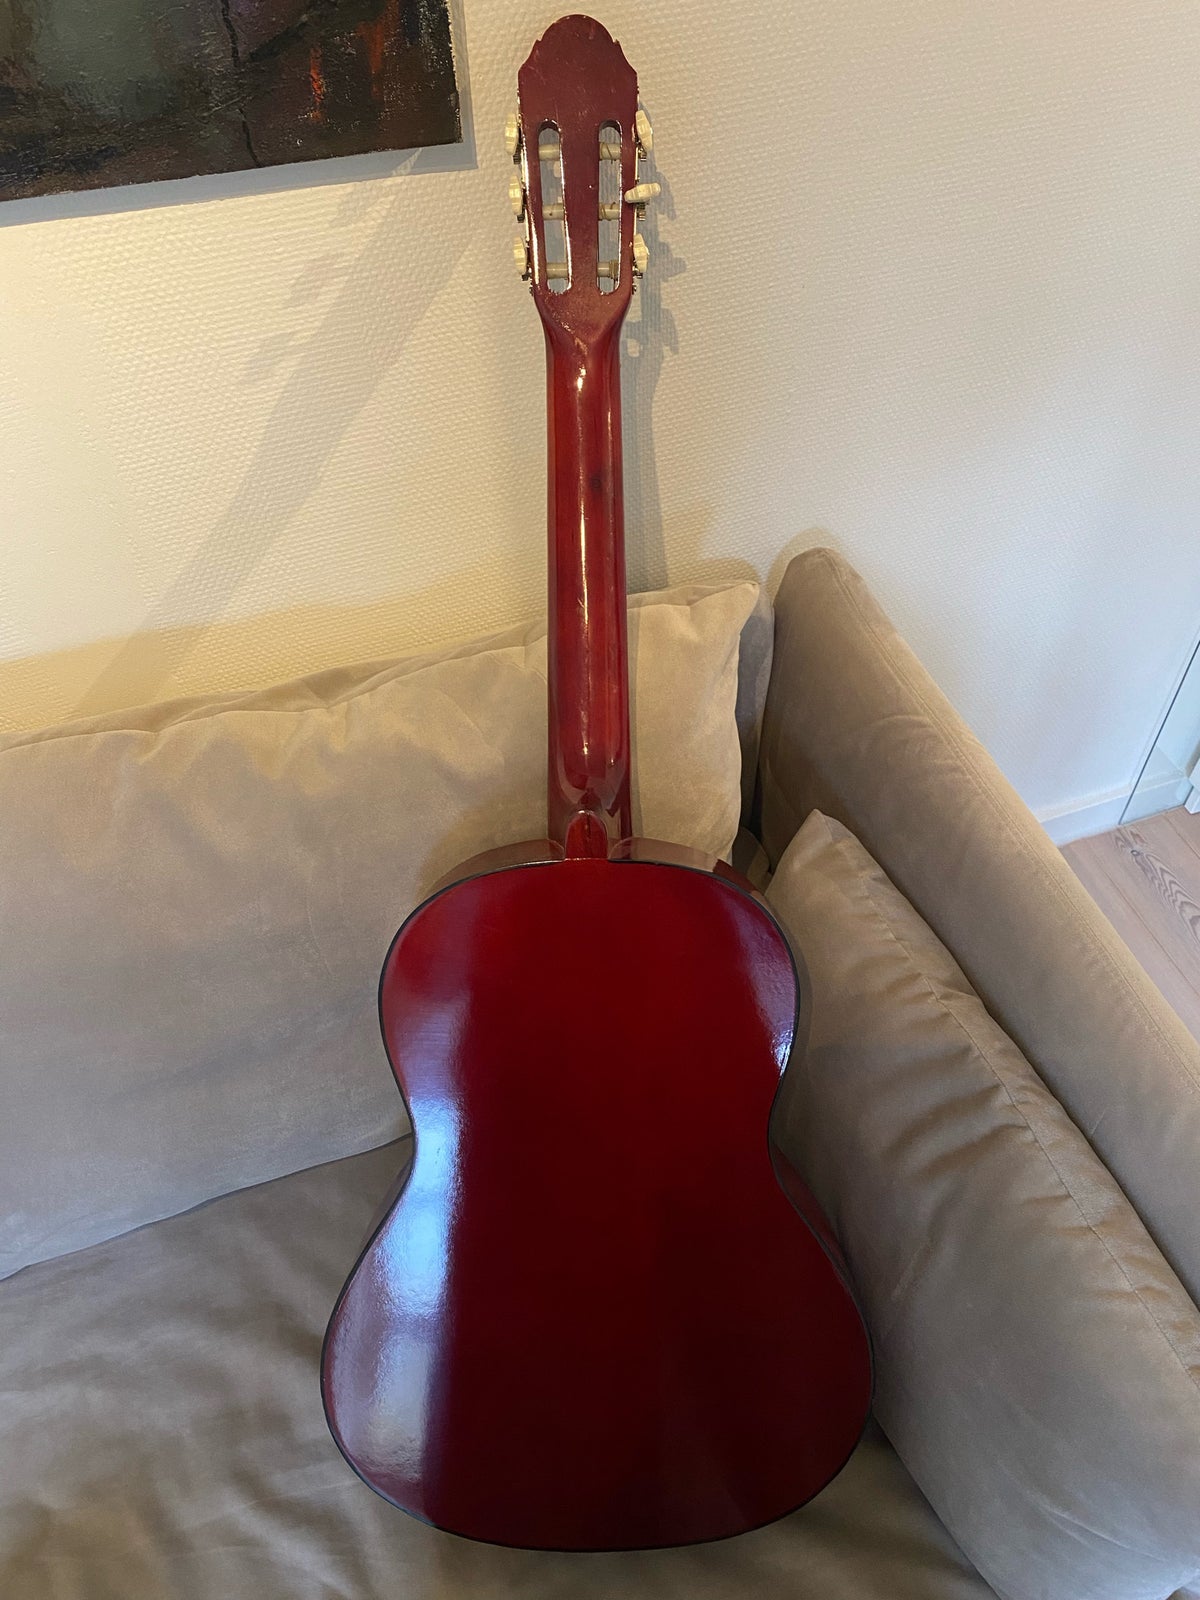 Klassisk, andet mærke Alida Guitar